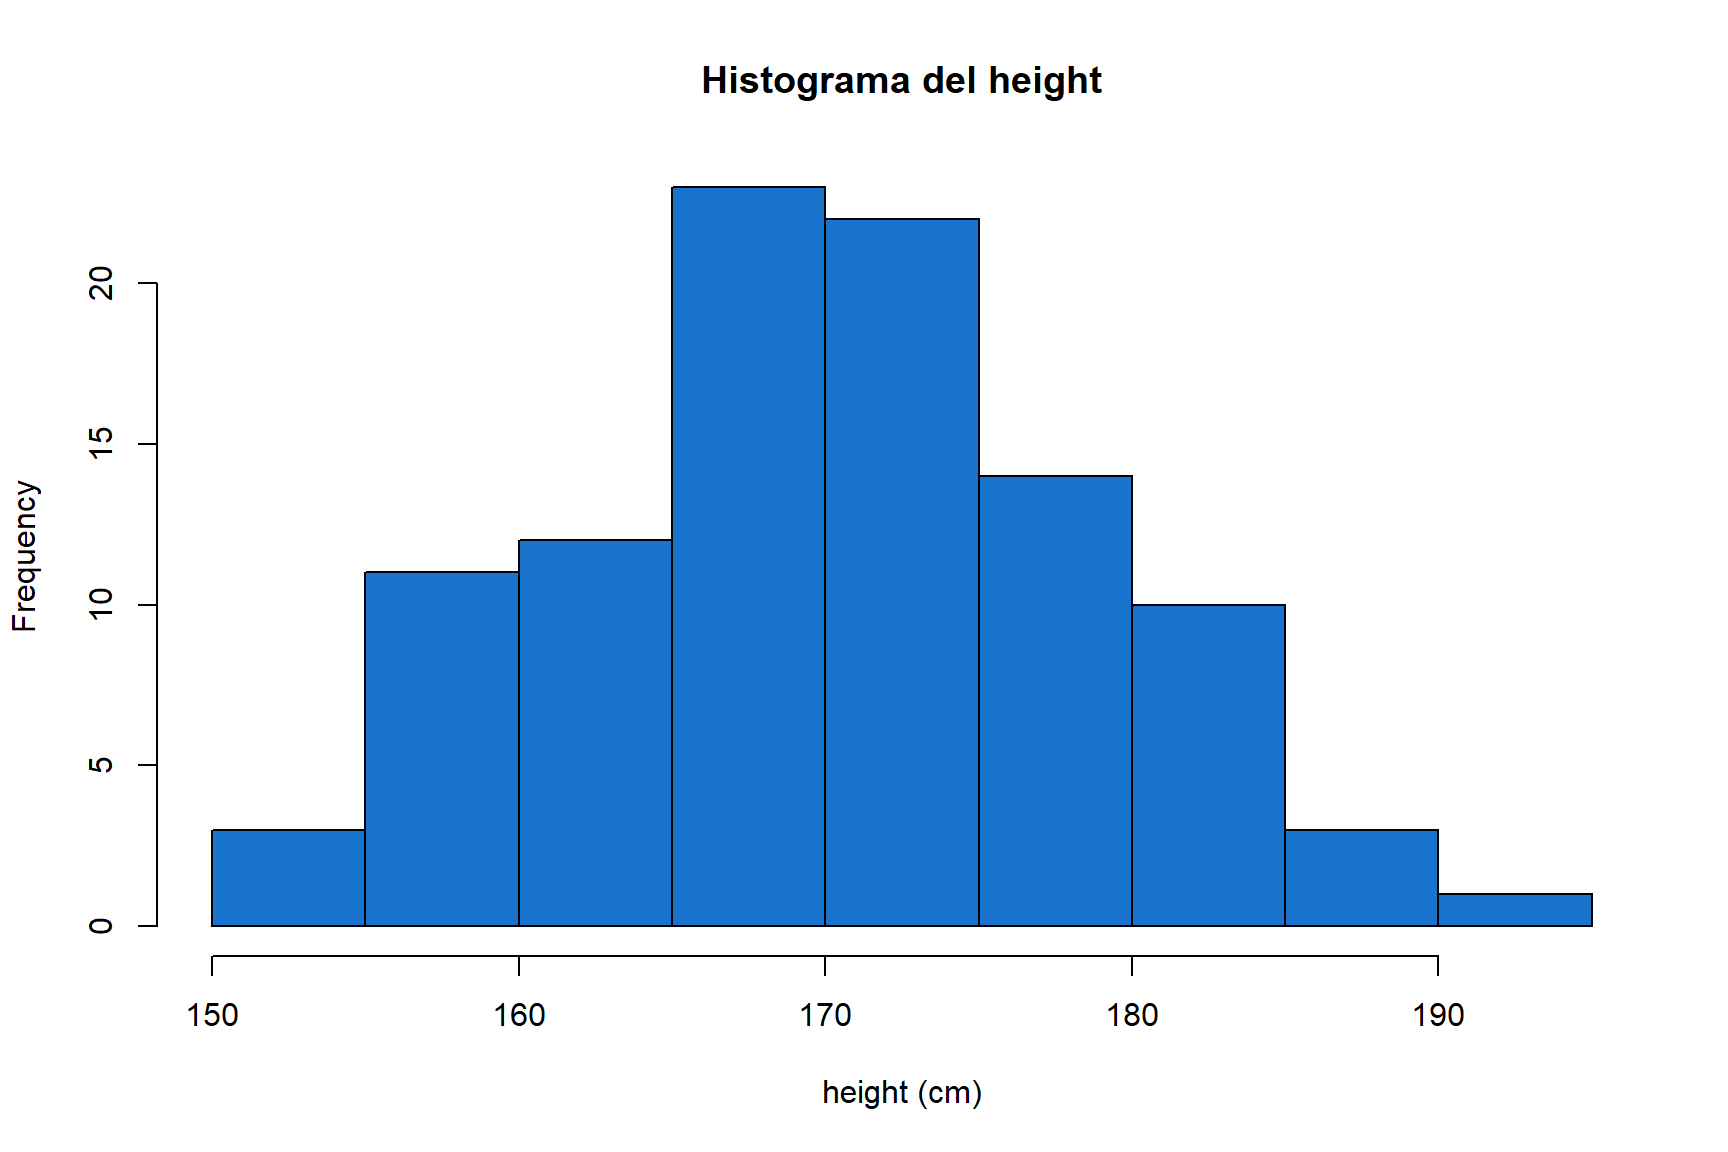 Histograma del height dels alumnes